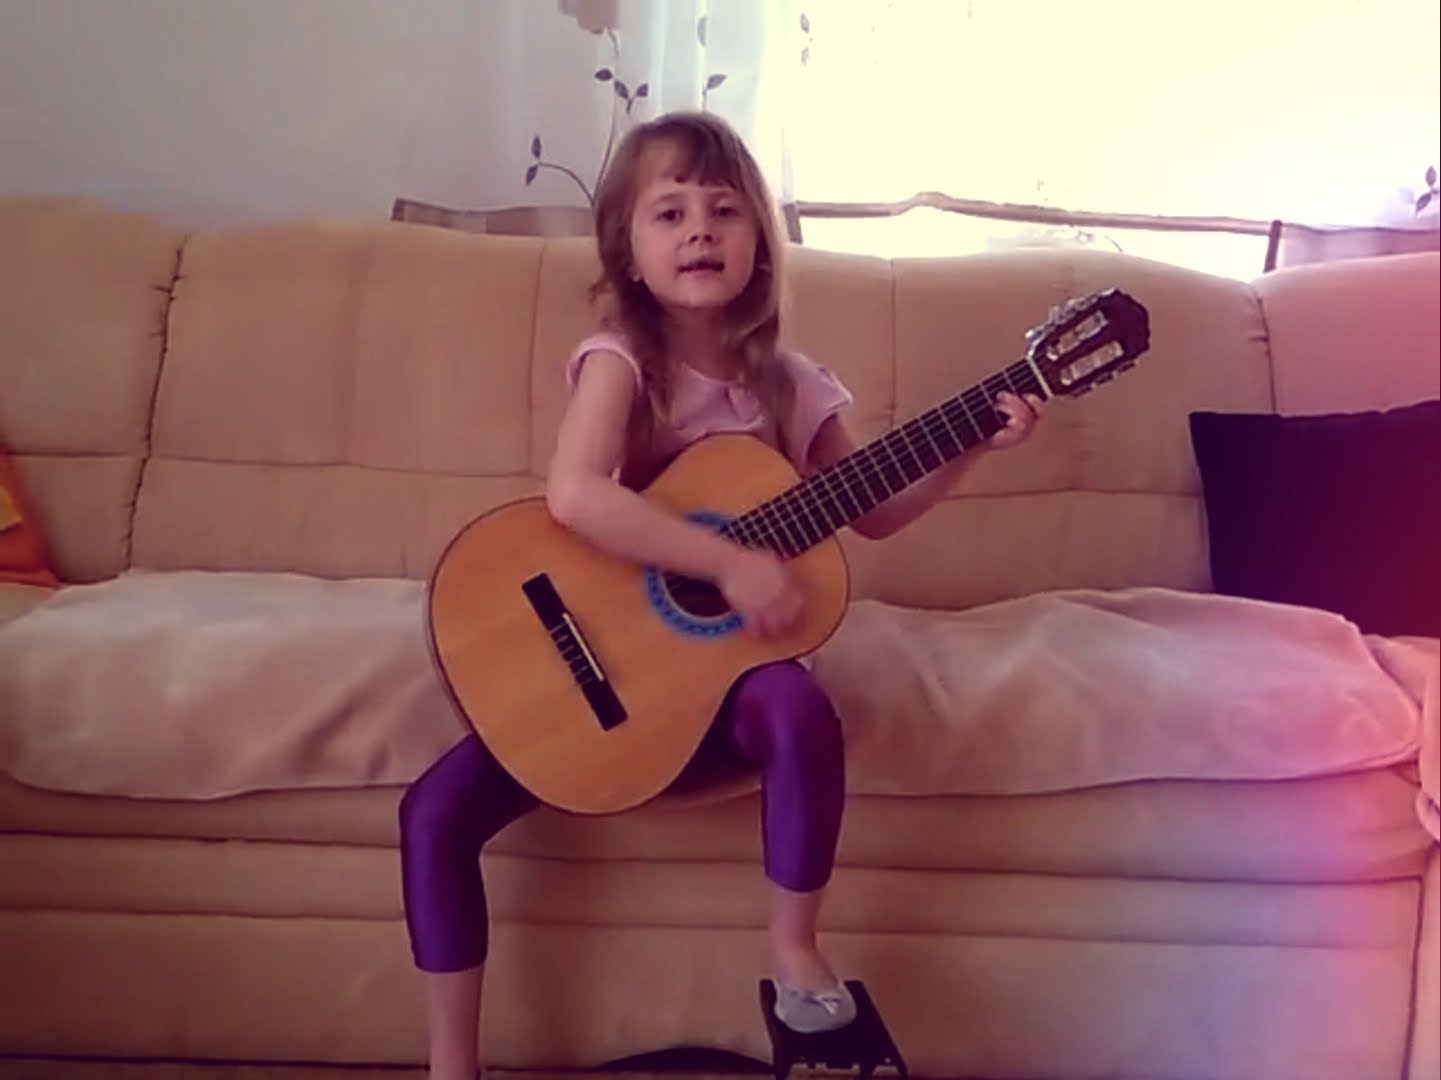 Наташку дергать за косу. Маленькая девочка поет под гитару. Девочка играет на гитаре и поет. Девочки на гитаре поют. Классно поет девочка.